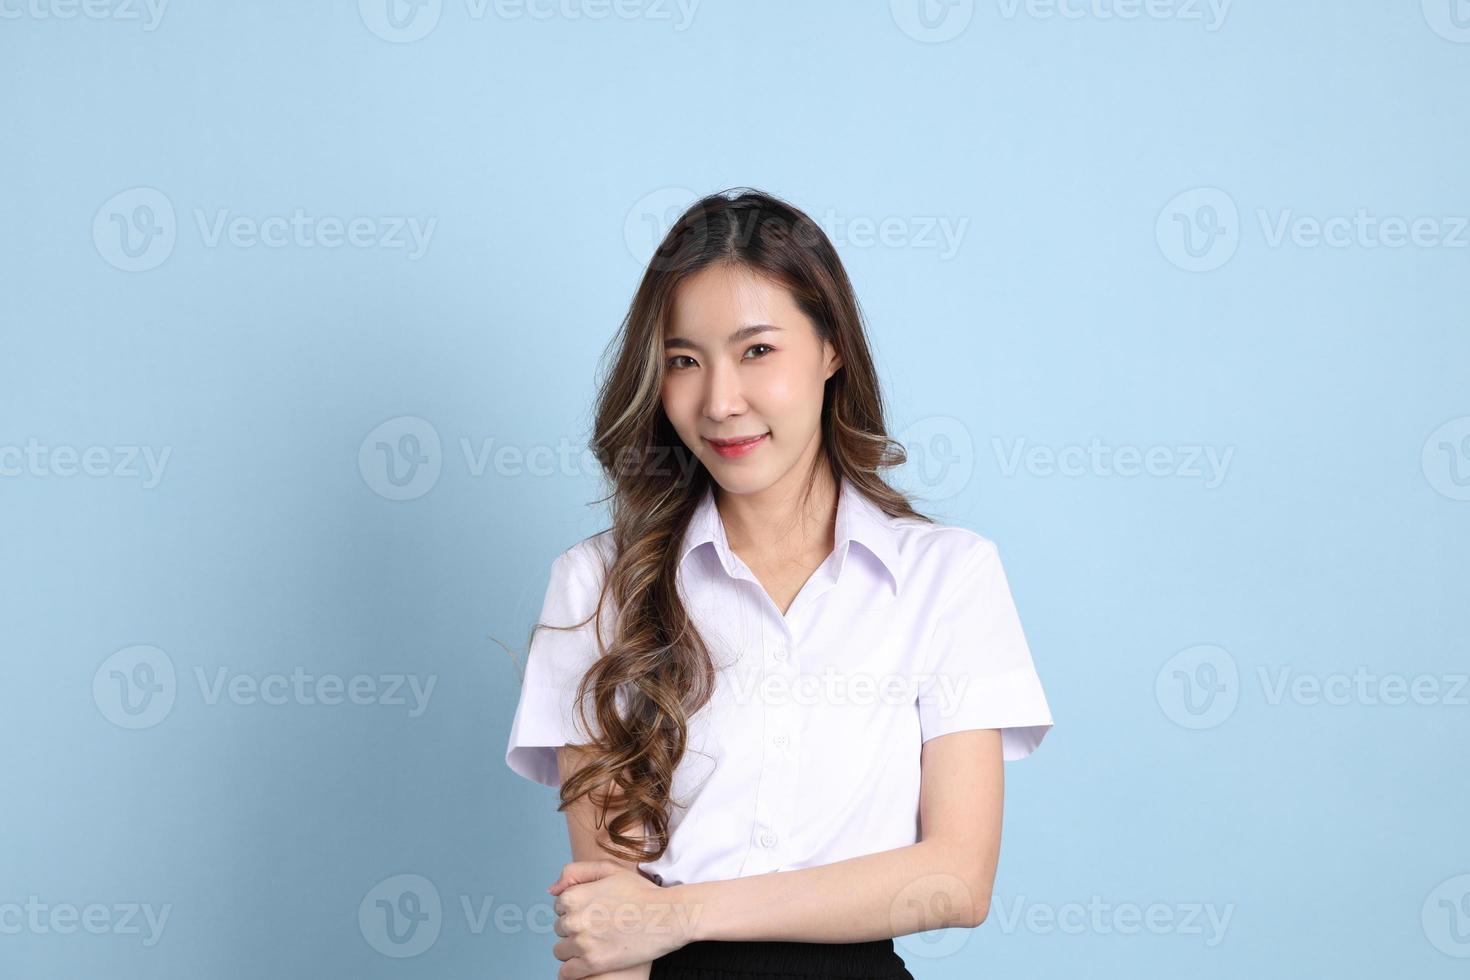 garota de uniforme de estudante foto